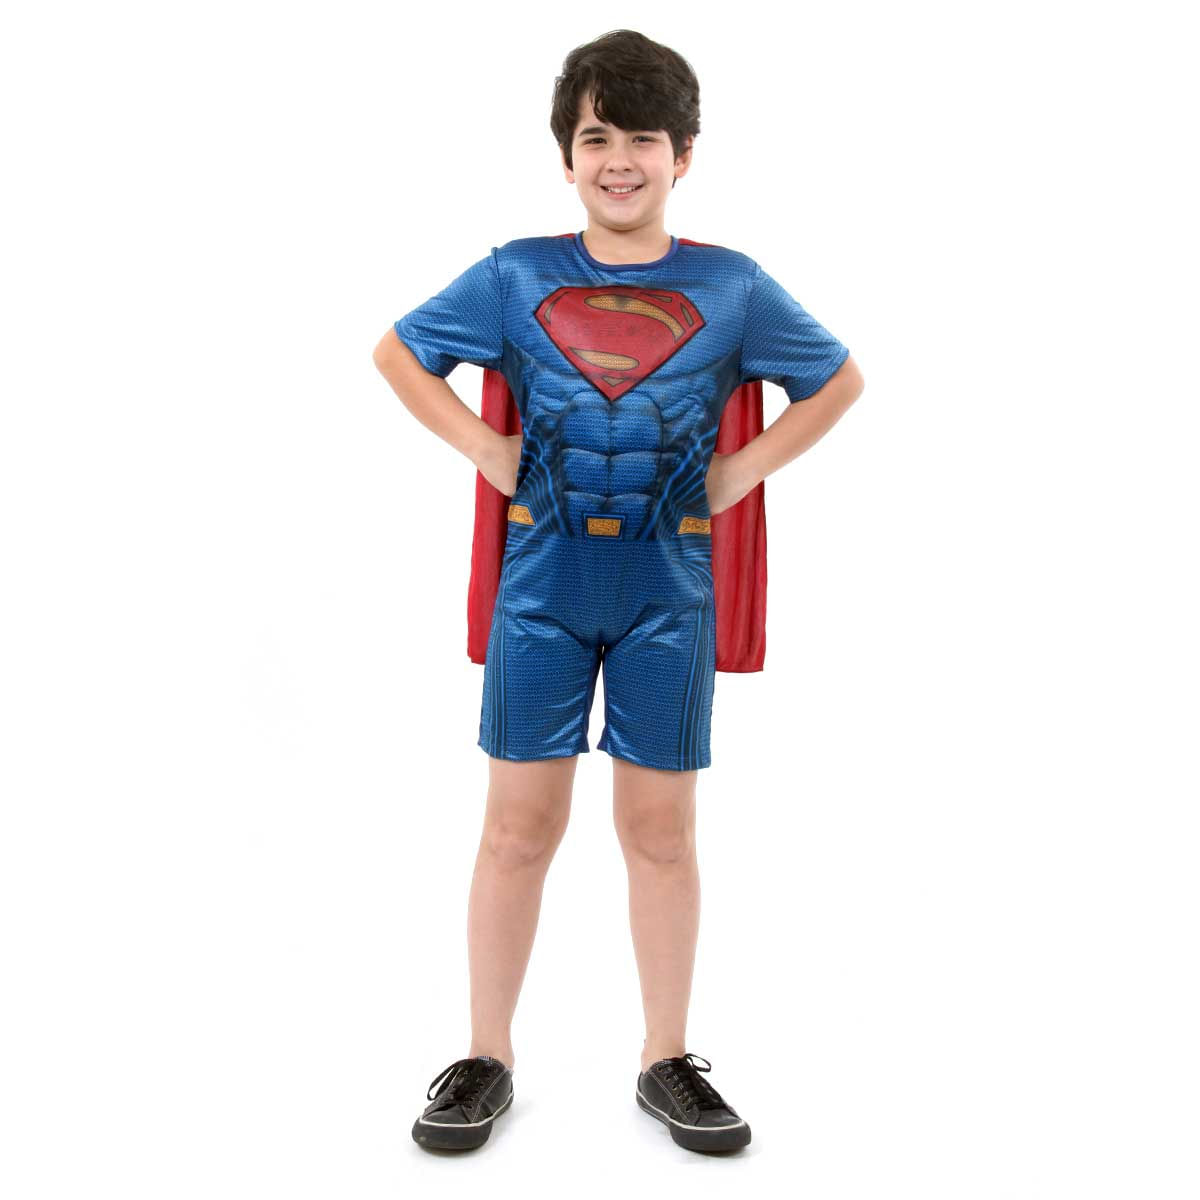 Fantasia Super Homem Infantil Curto com Musculatura - Liga da Justiça M